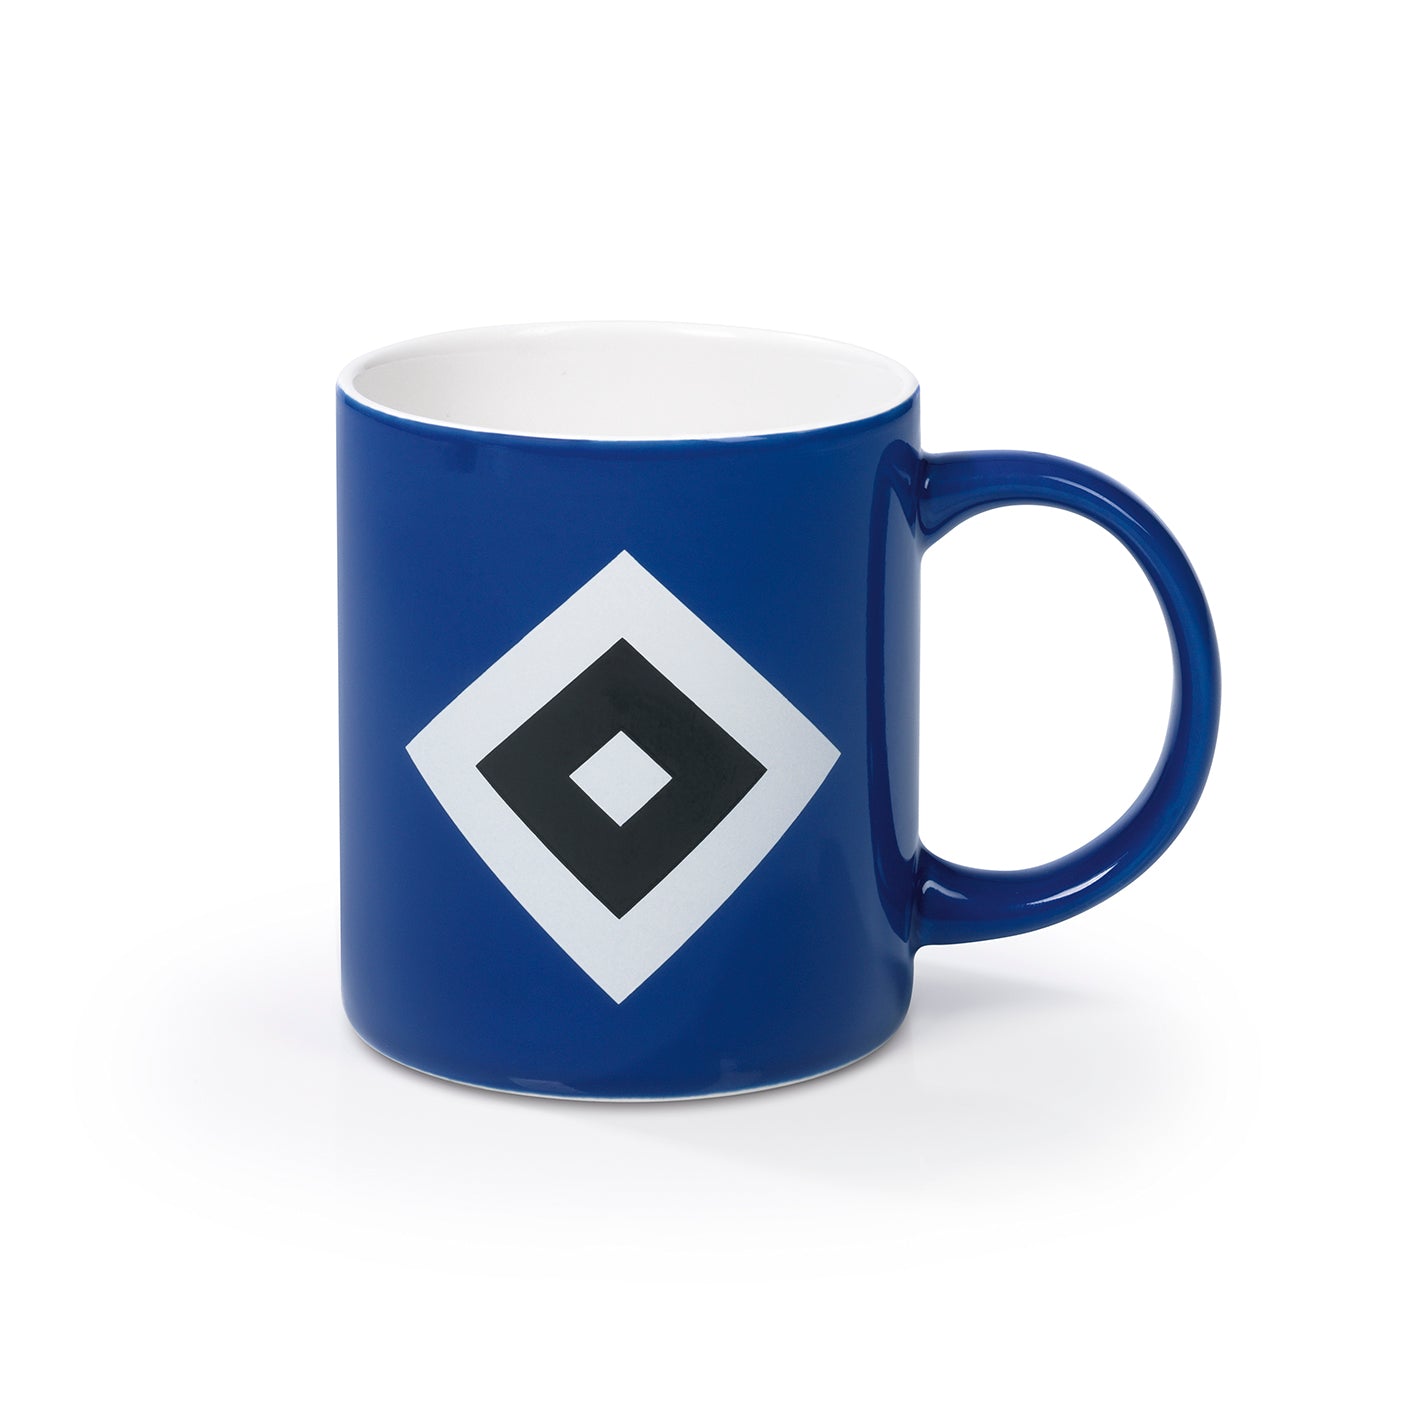 Kaffeebecher - Offizieller HSV Fanartikel - 350 ml - blau/weiß/schwarz mit Logo von HSV